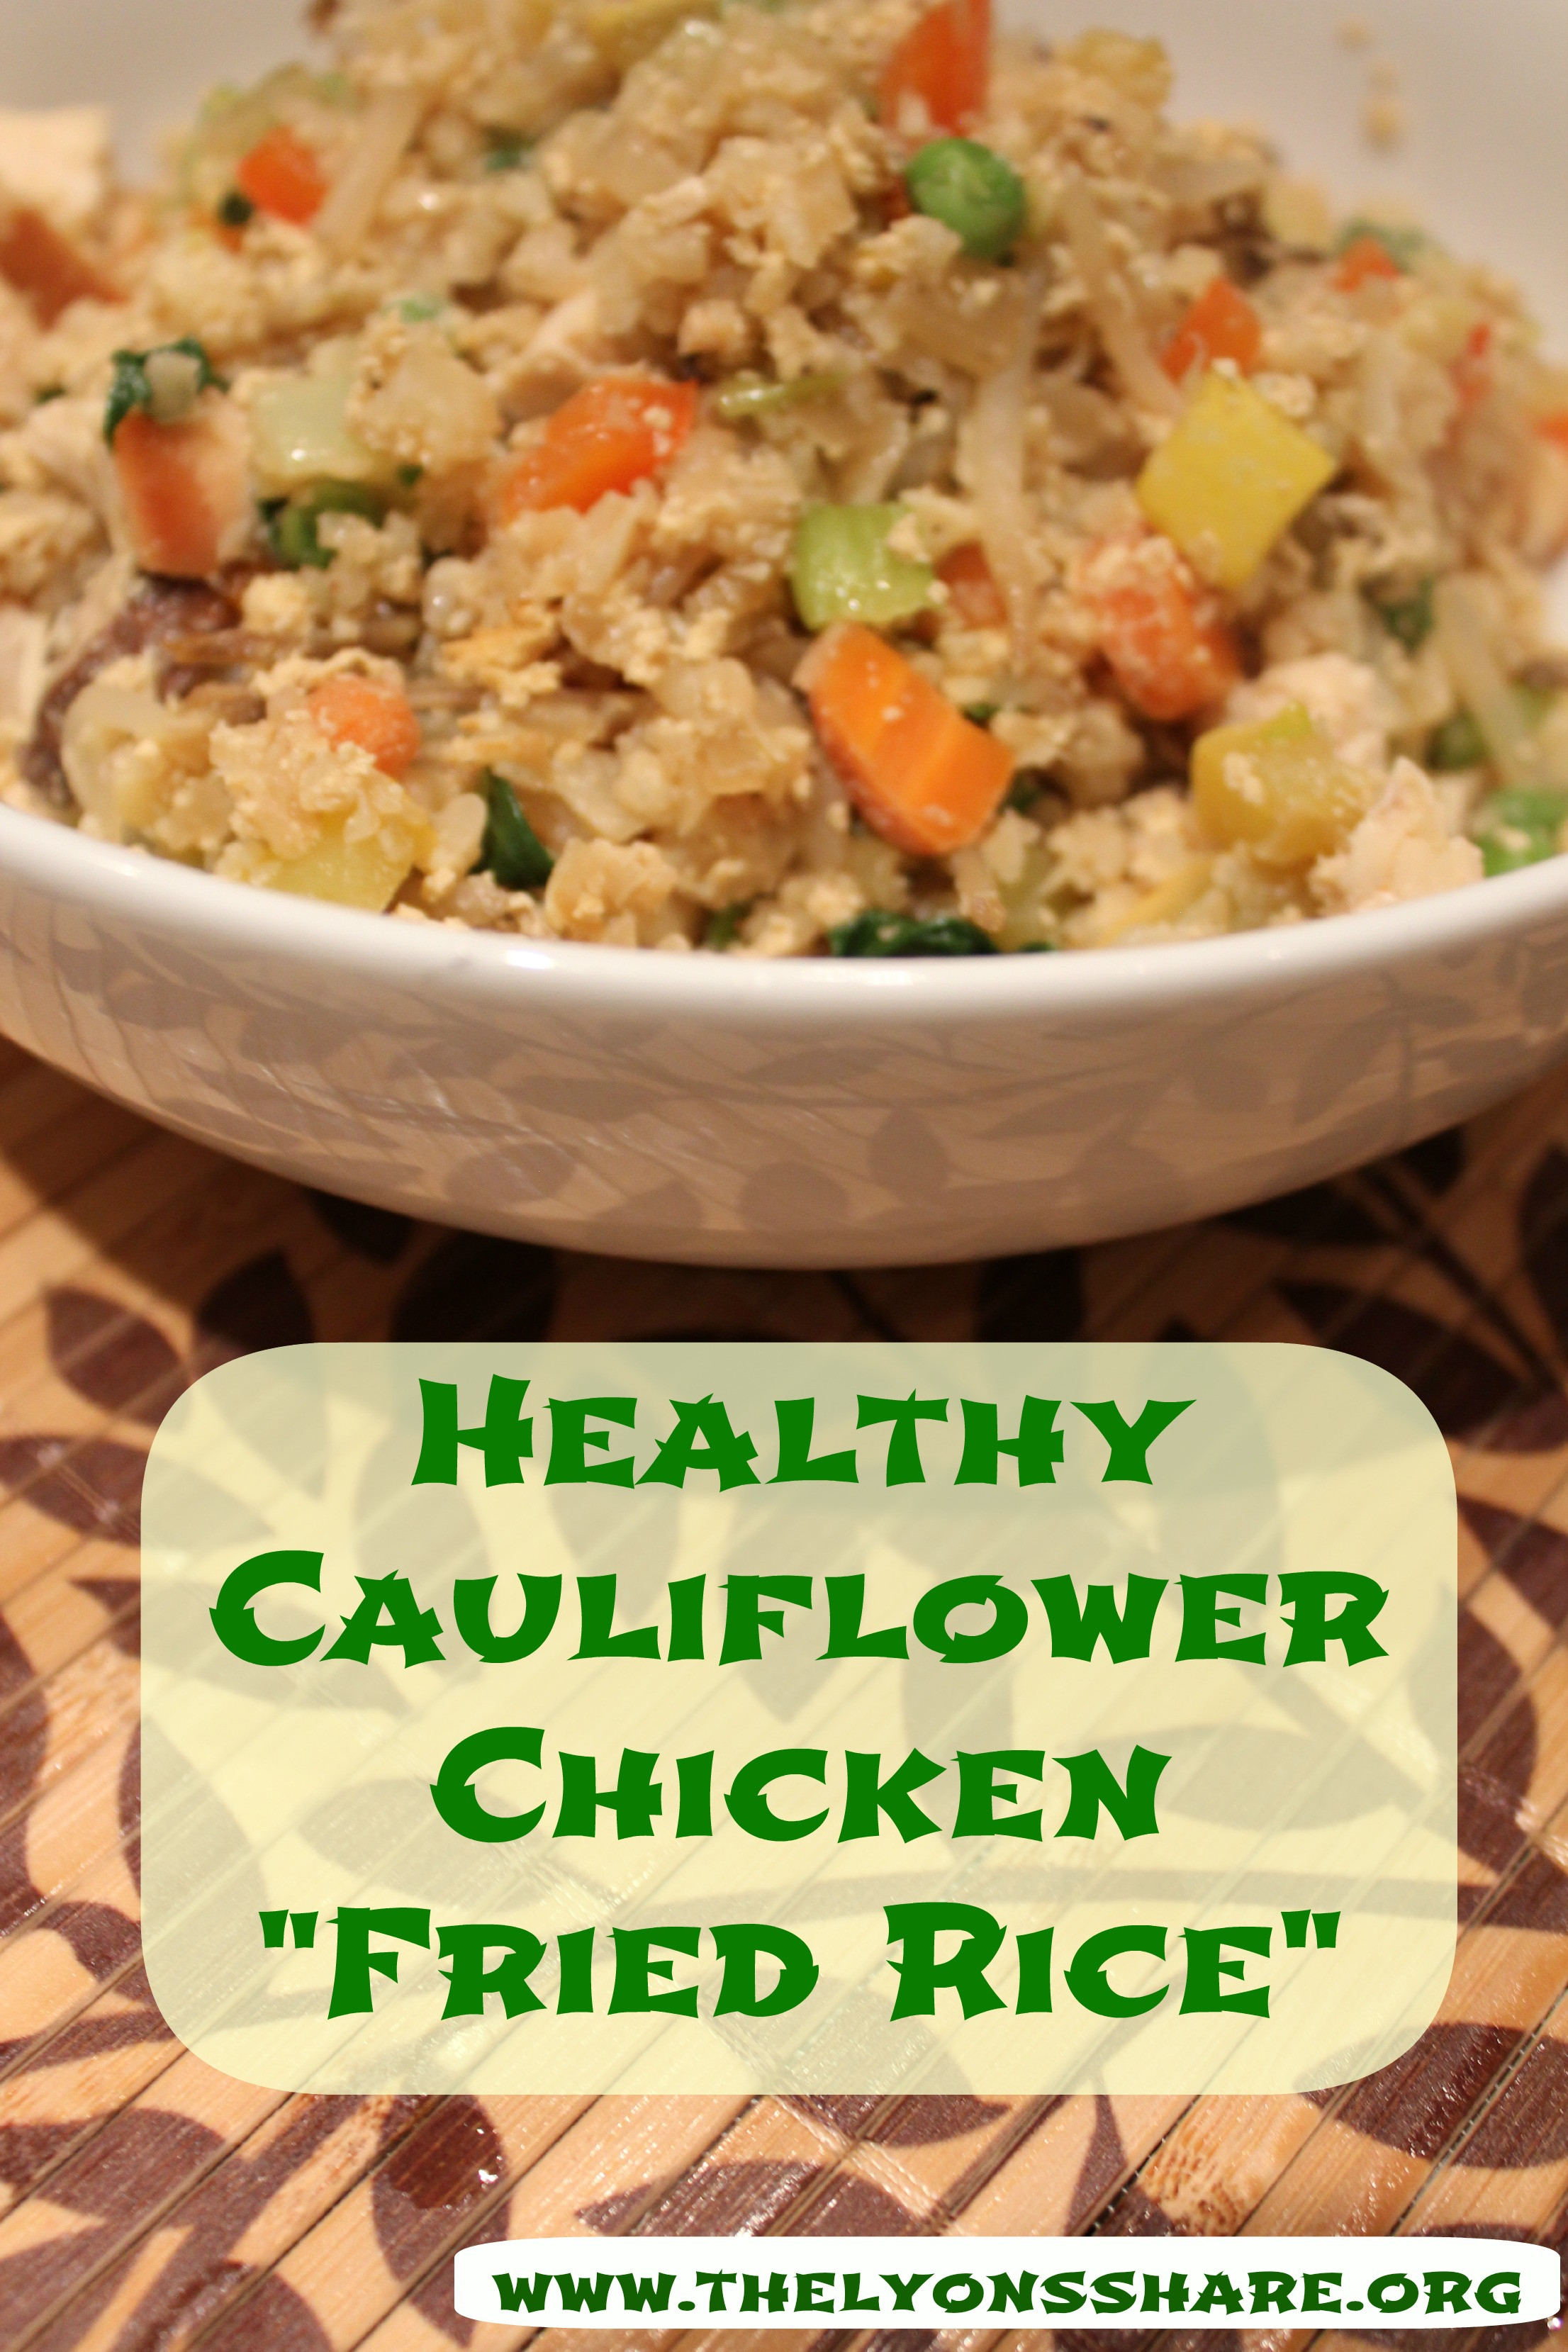 Healthy Chicken Fried Rice Recipe
 Healthy Cauliflower Chicken "Fried Rice"